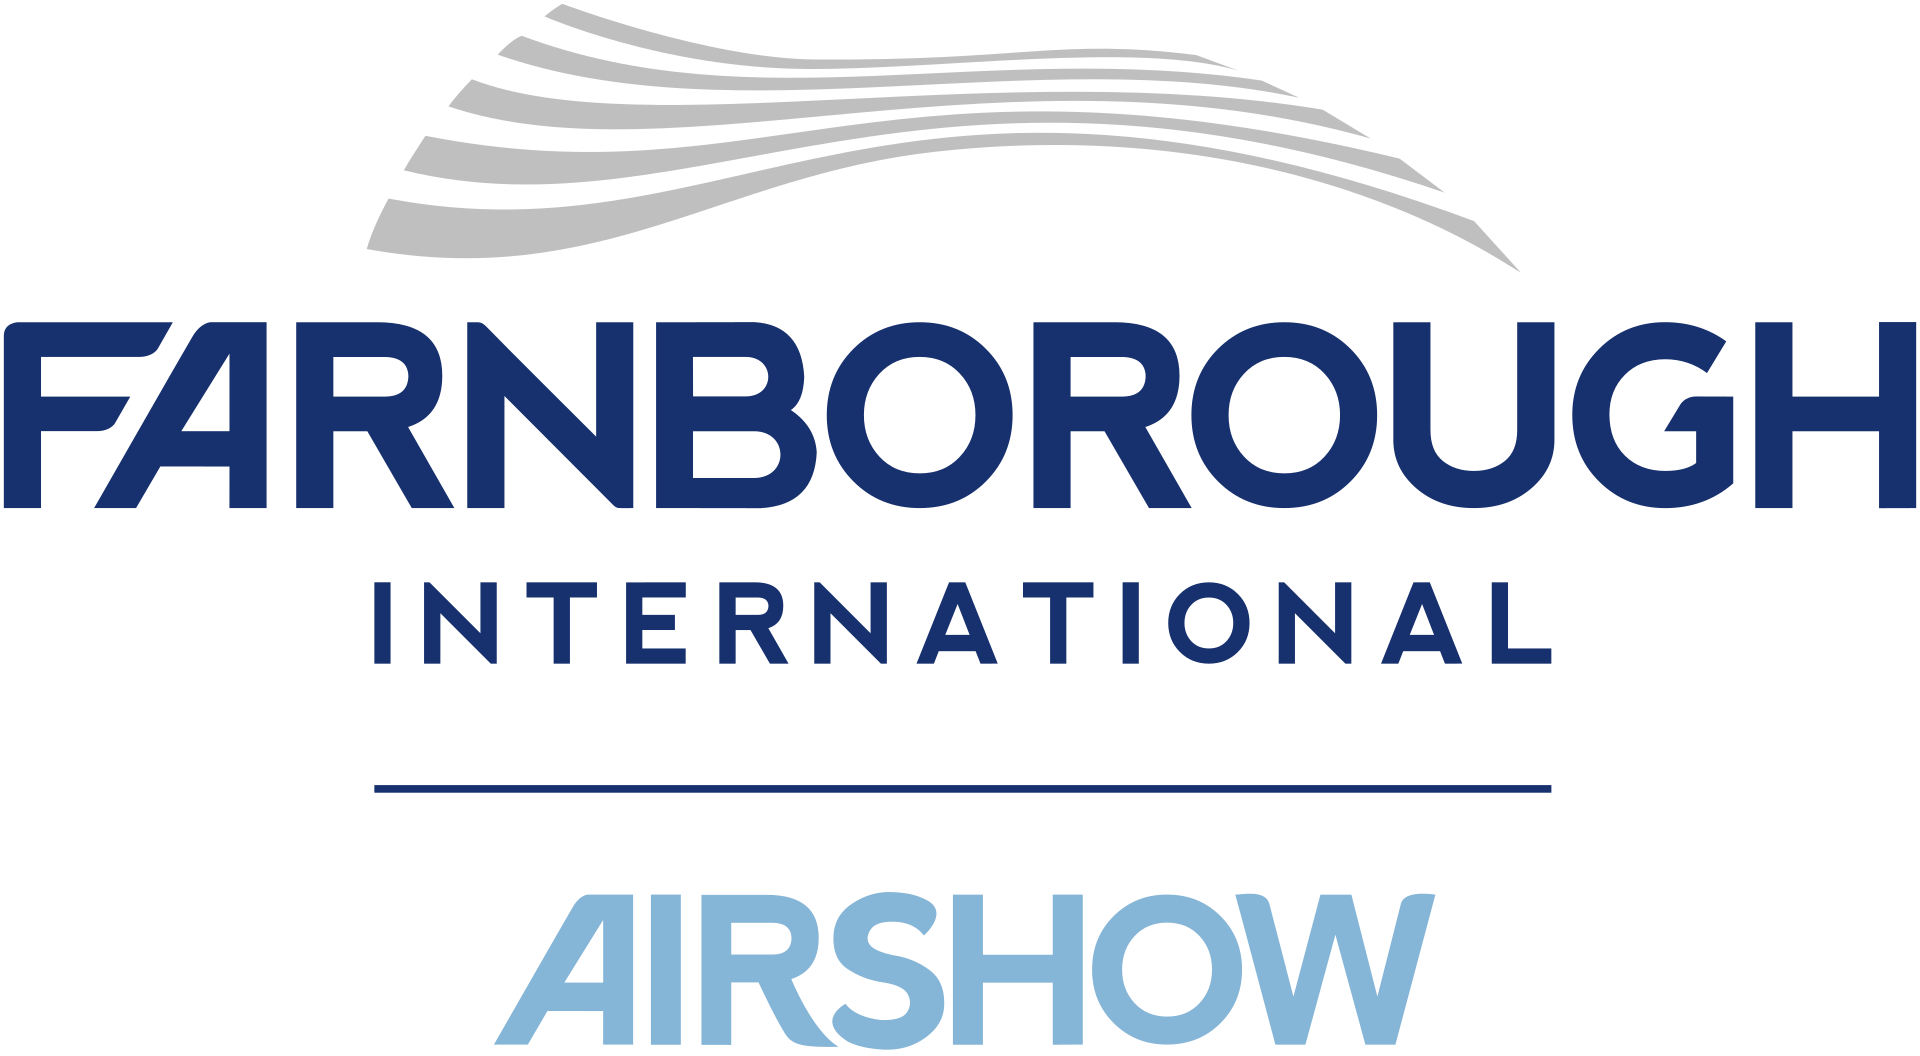 معرض فارنبورو الدولي للطيران